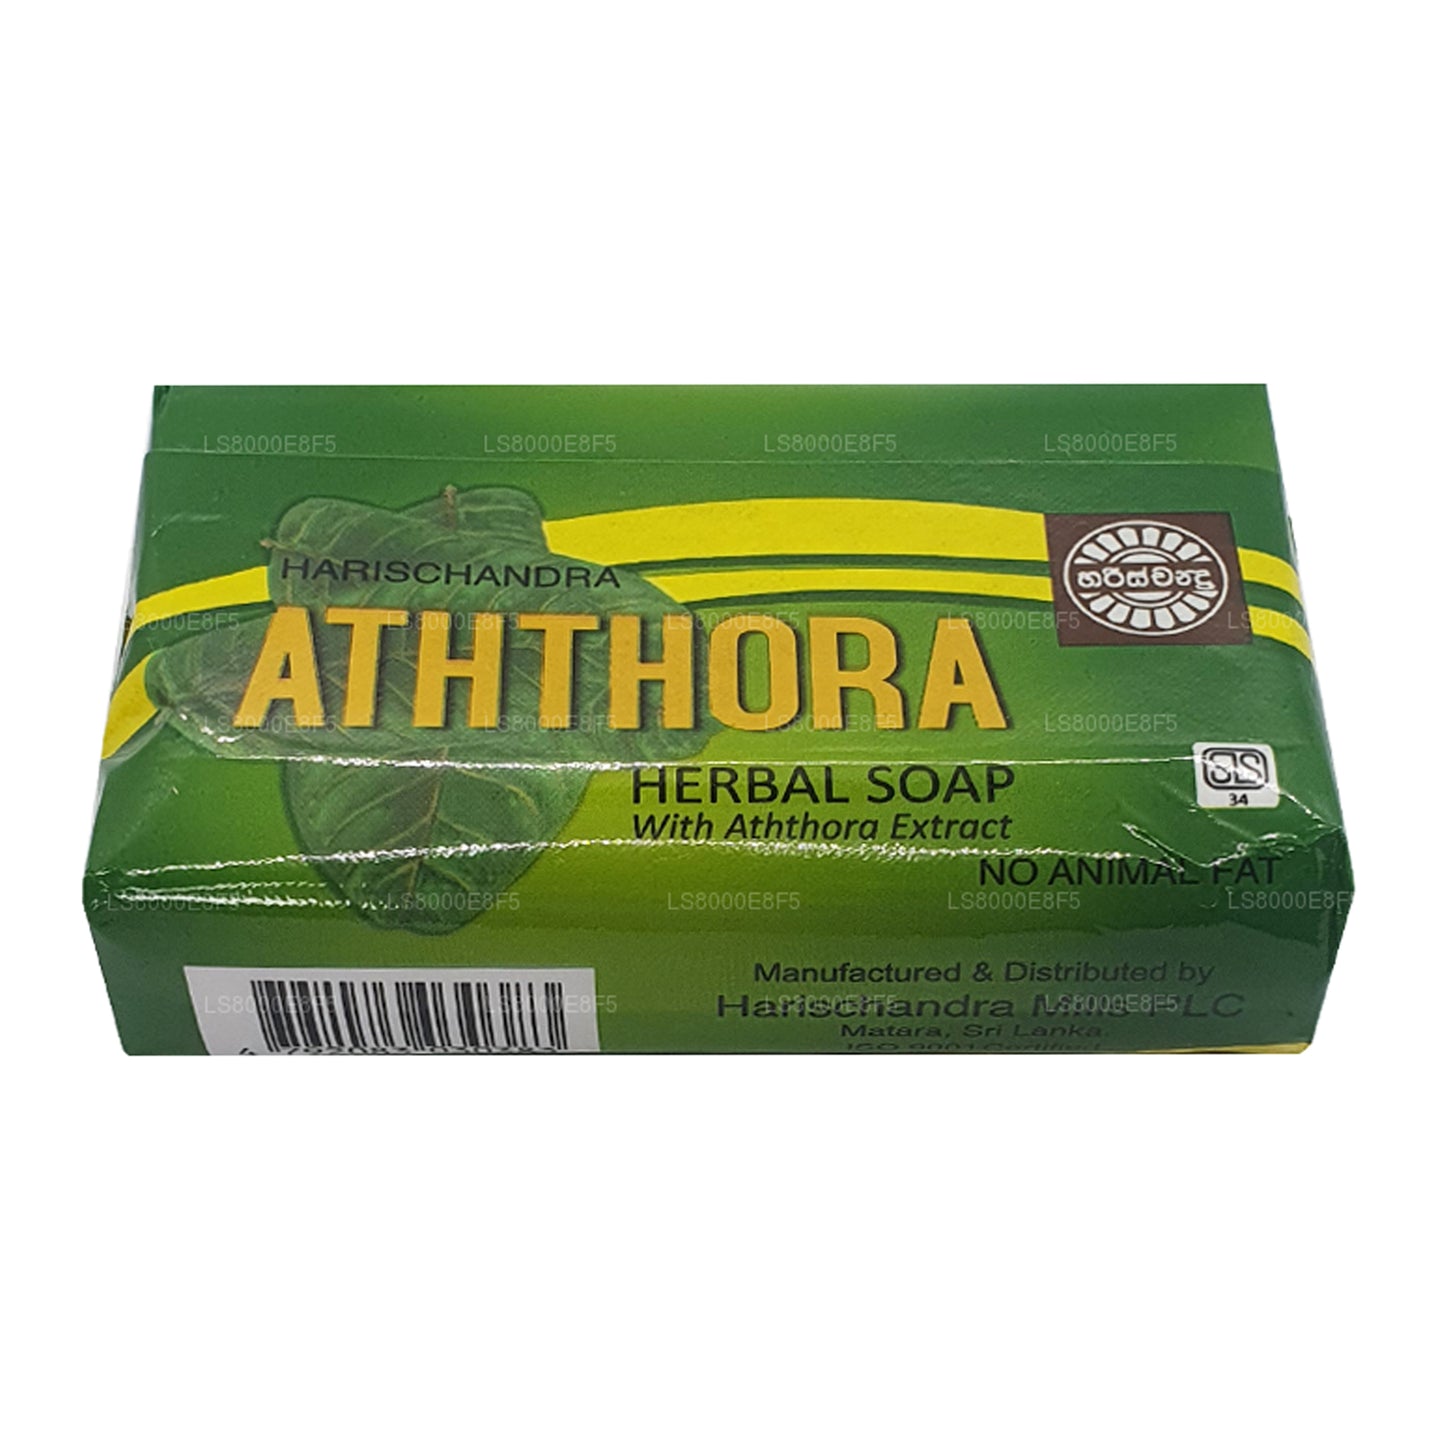 Jabón Harischandra Aththora (70 g)